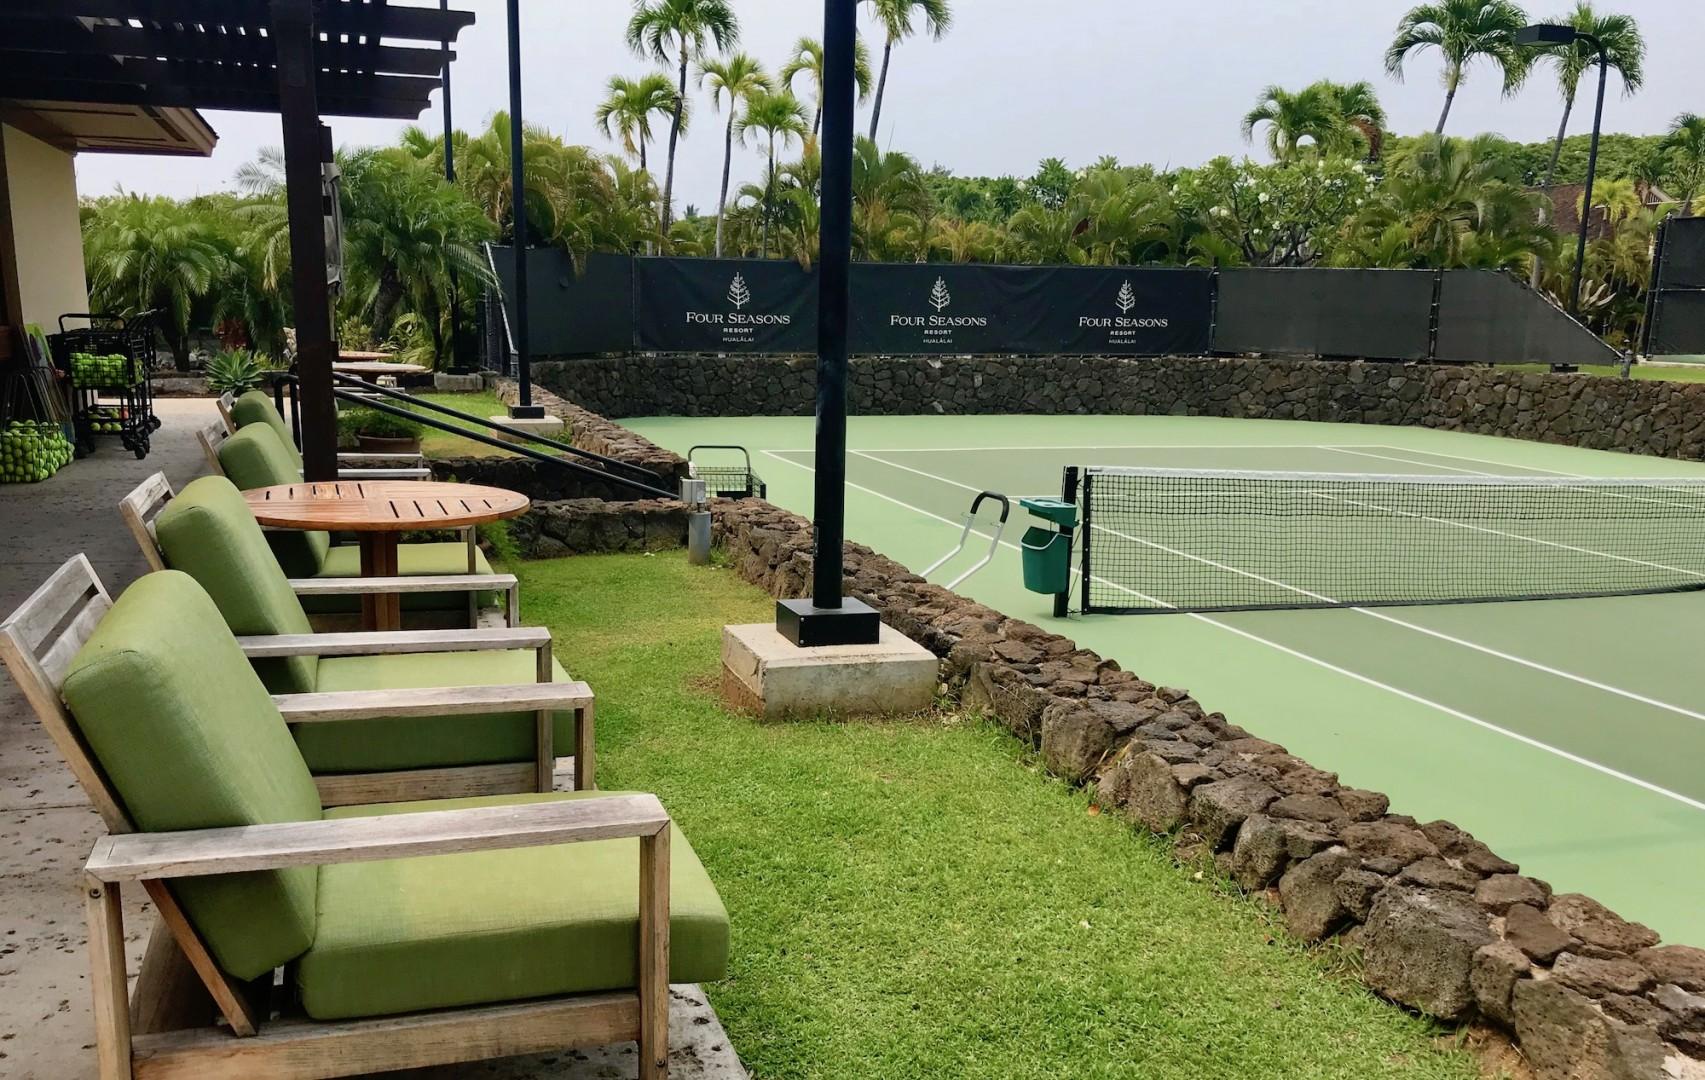 Kailua Kona Vacation Rentals, 3BD Pakui Street (131) Estate Home at Four Seasons Resort at Hualalai - Four Seasons Resort at Hualalai tennis courts.